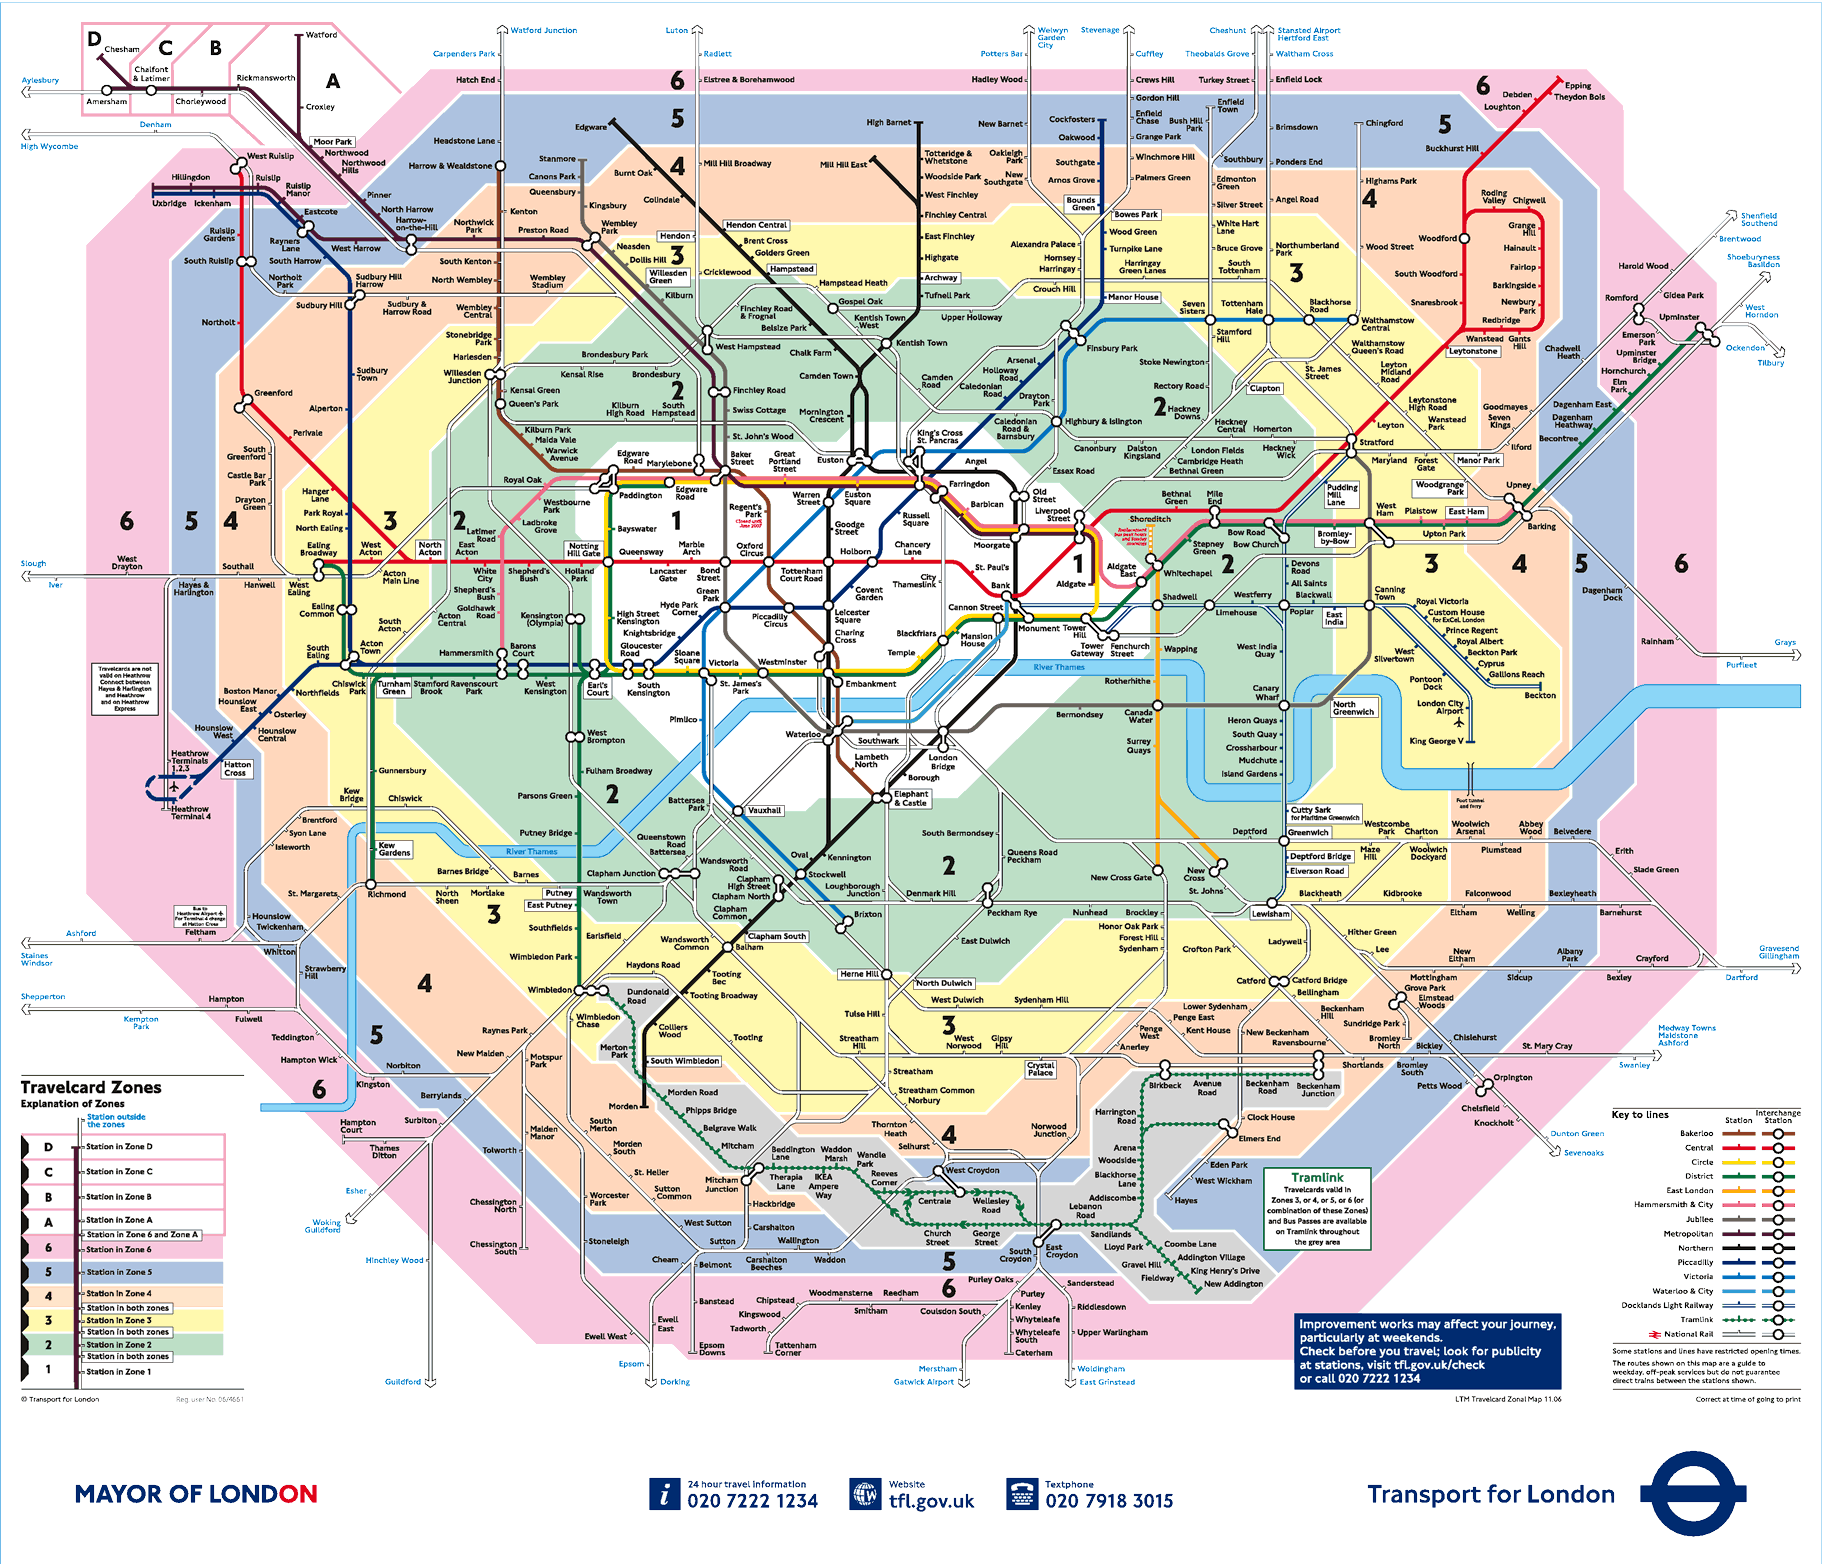 Paris Metro Map Zones 1 2